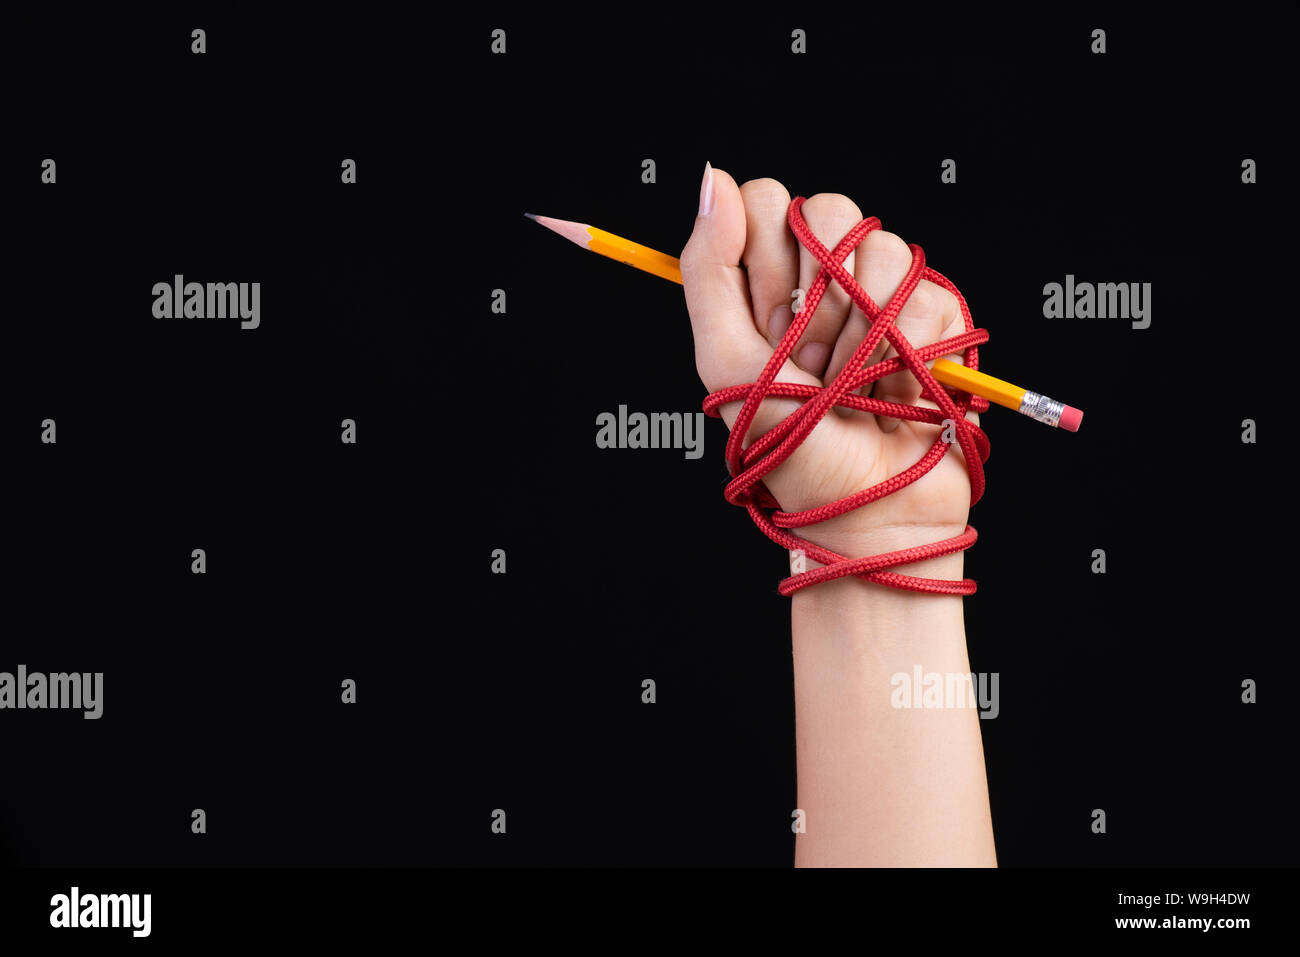 Femme la main avec un crayon jaune attaché avec la corde rouge, illustrant l'idée de la liberté de la presse ou d'expression sur fond sombre. Journée mondiale de la liberté de la presse et Banque D'Images